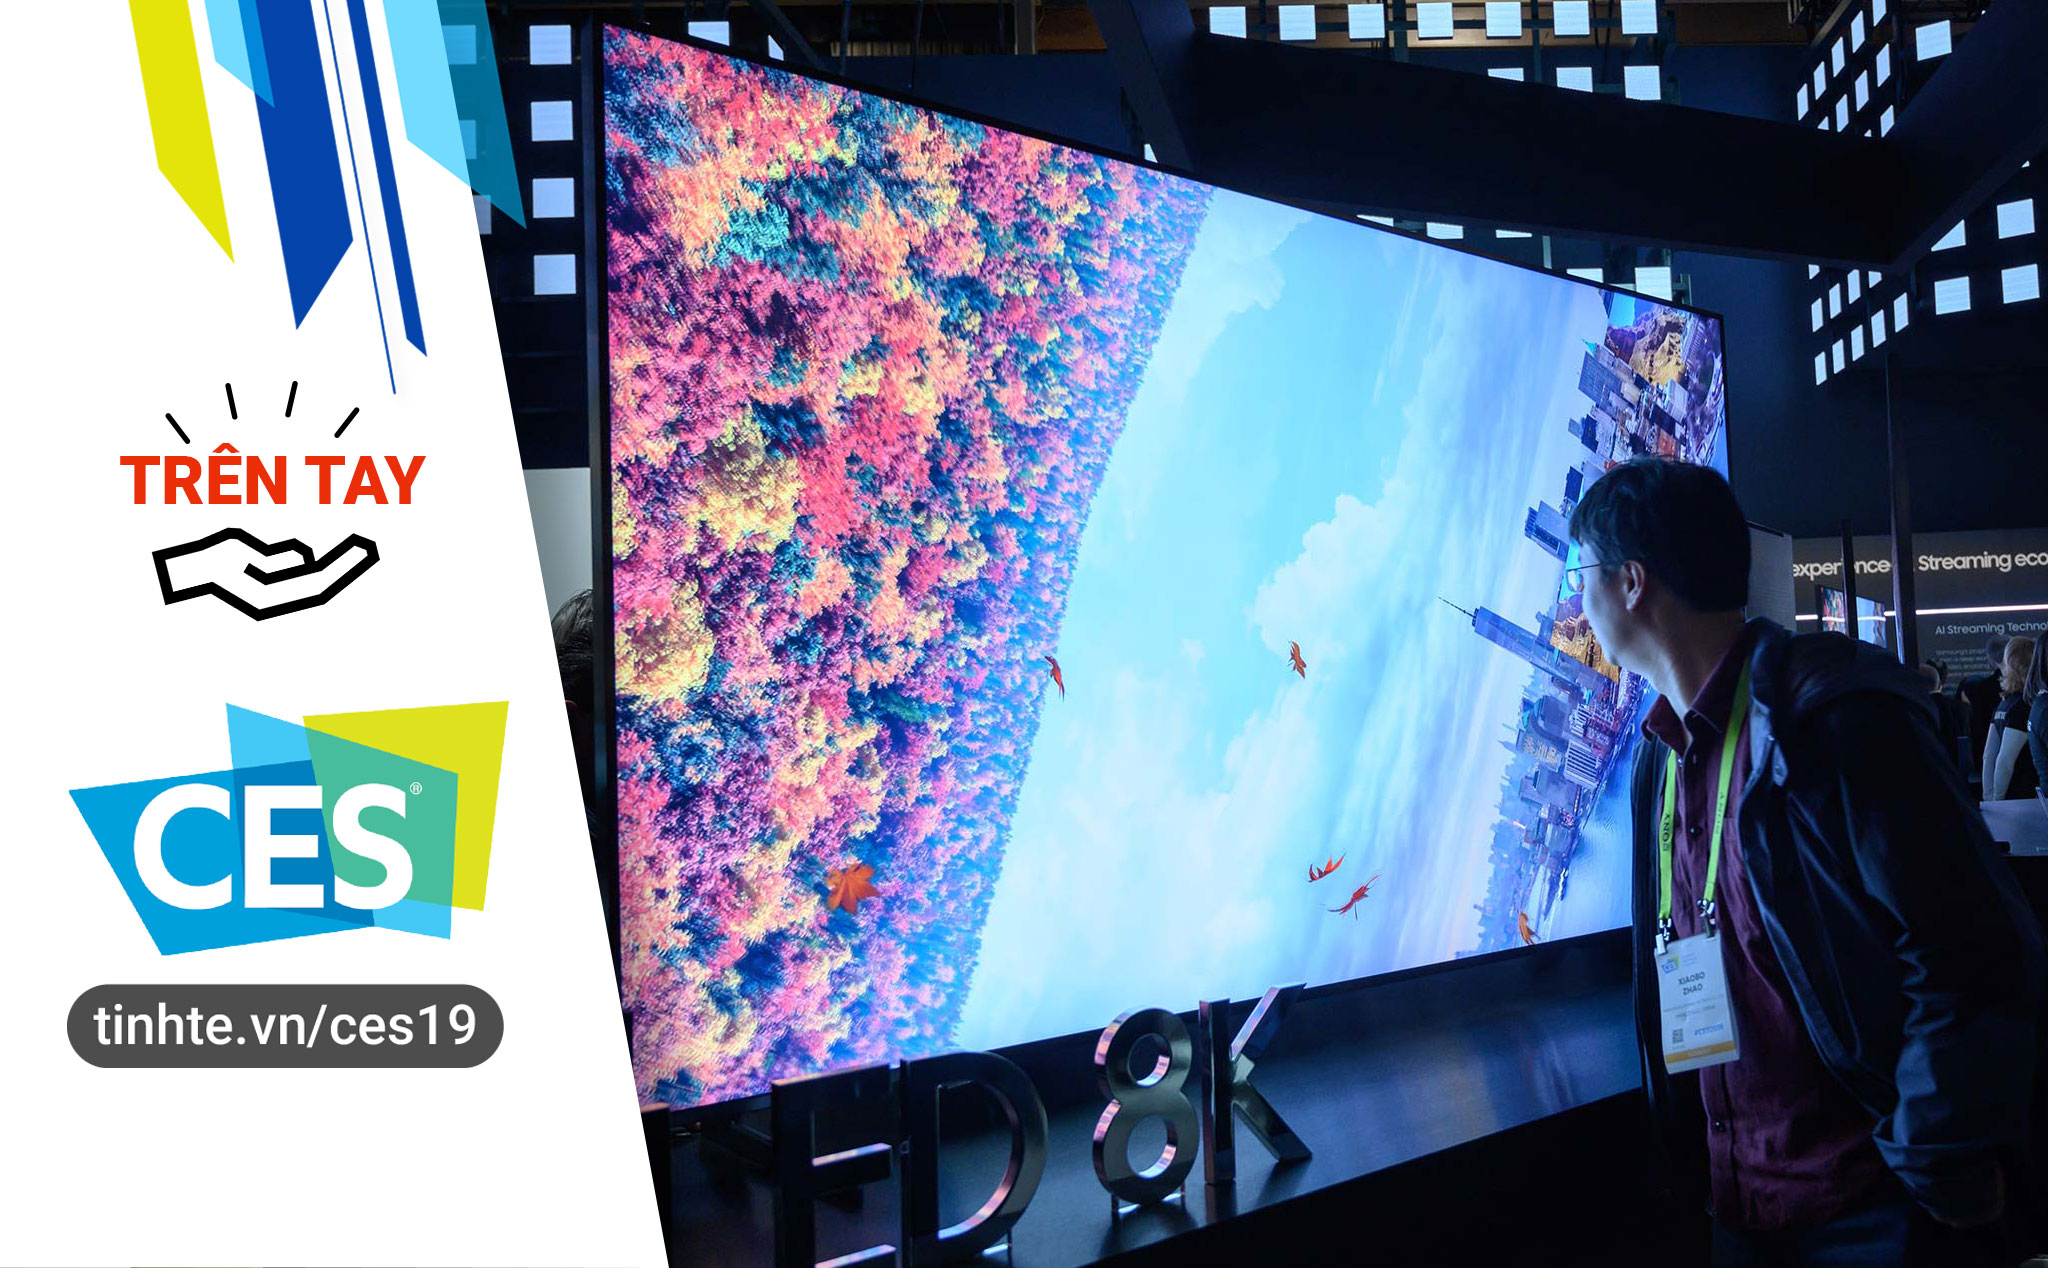 #CES19 - Trên tay TV Samsung QLED 8K 98 inch: rất to và đã